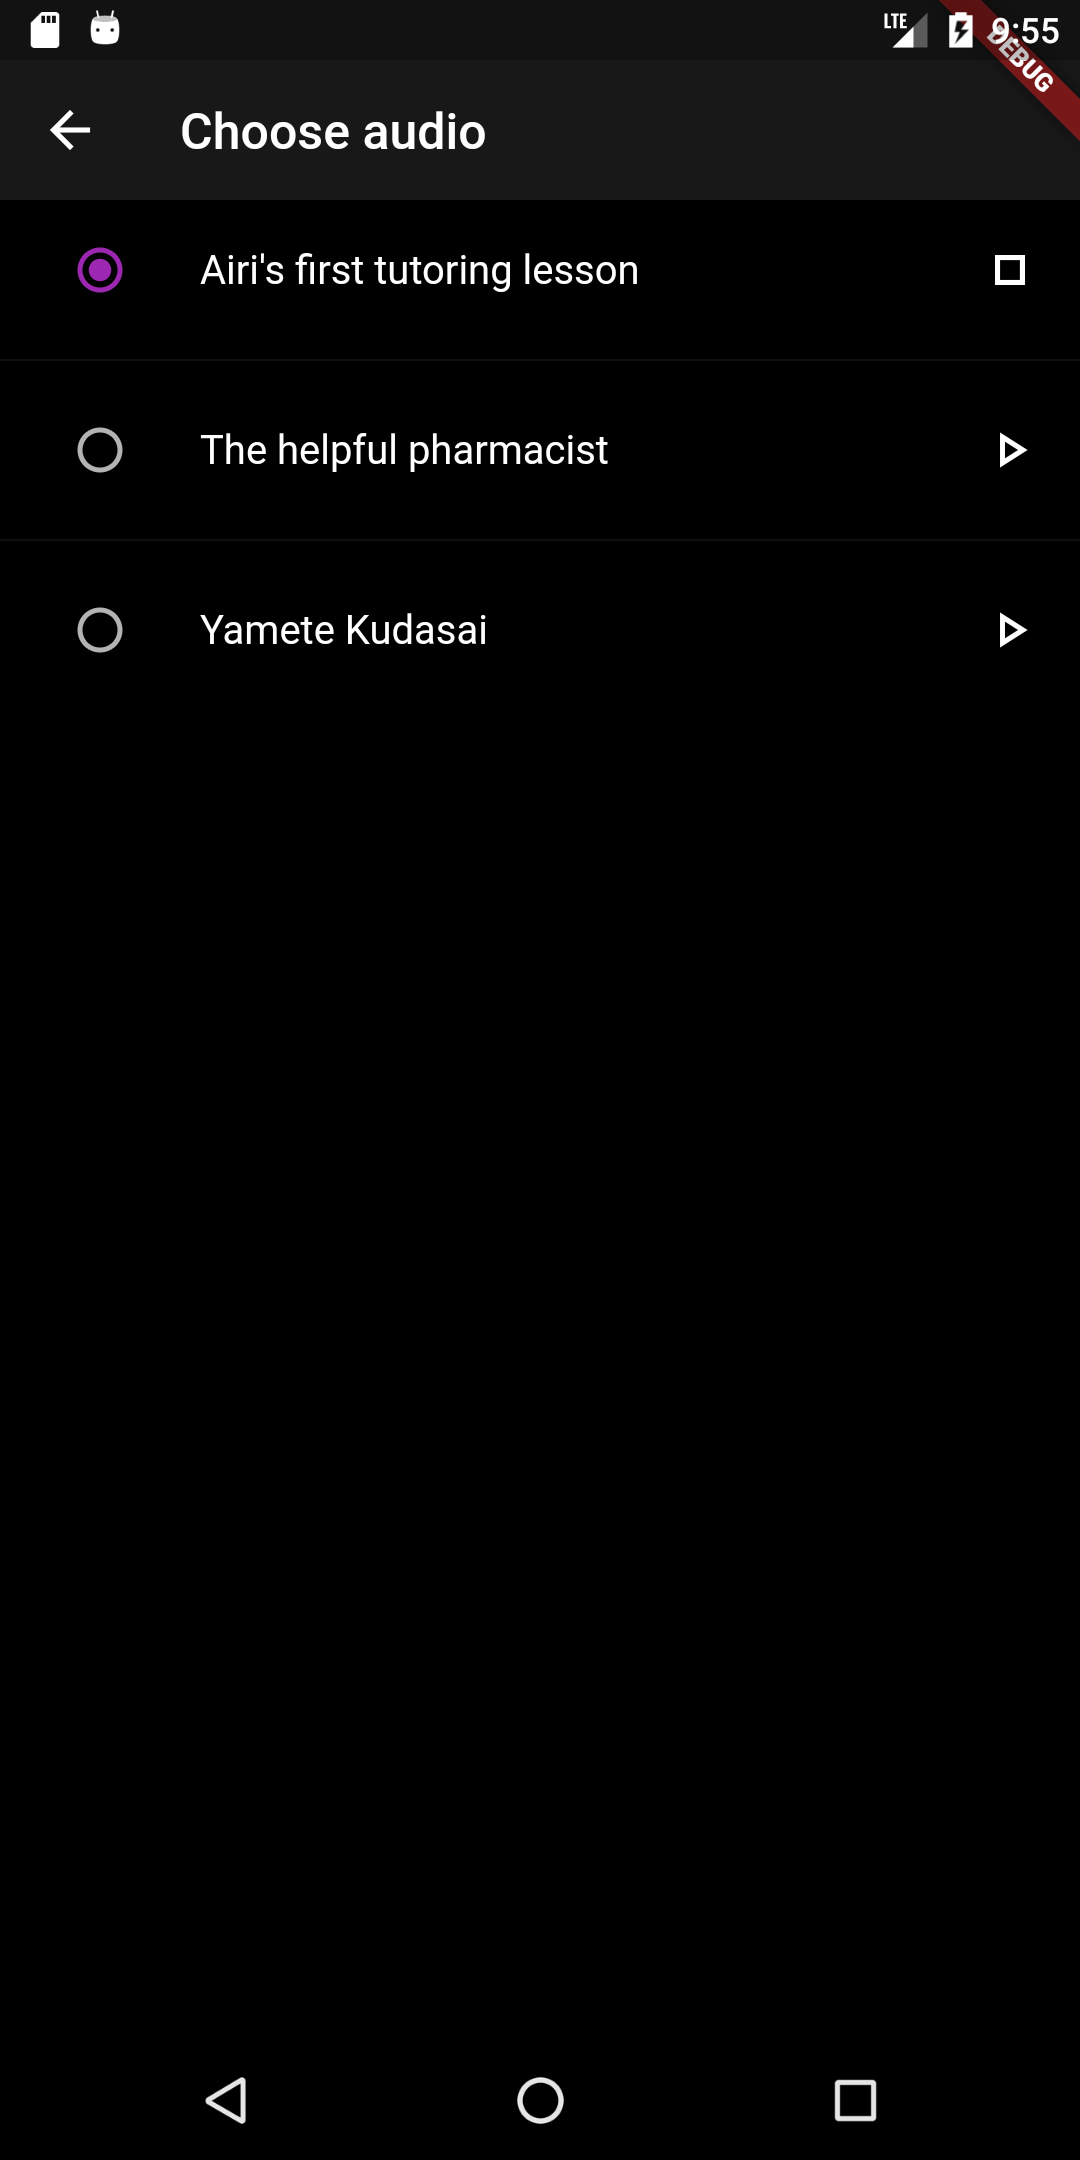 Yamete Kudasai App Built With flutter